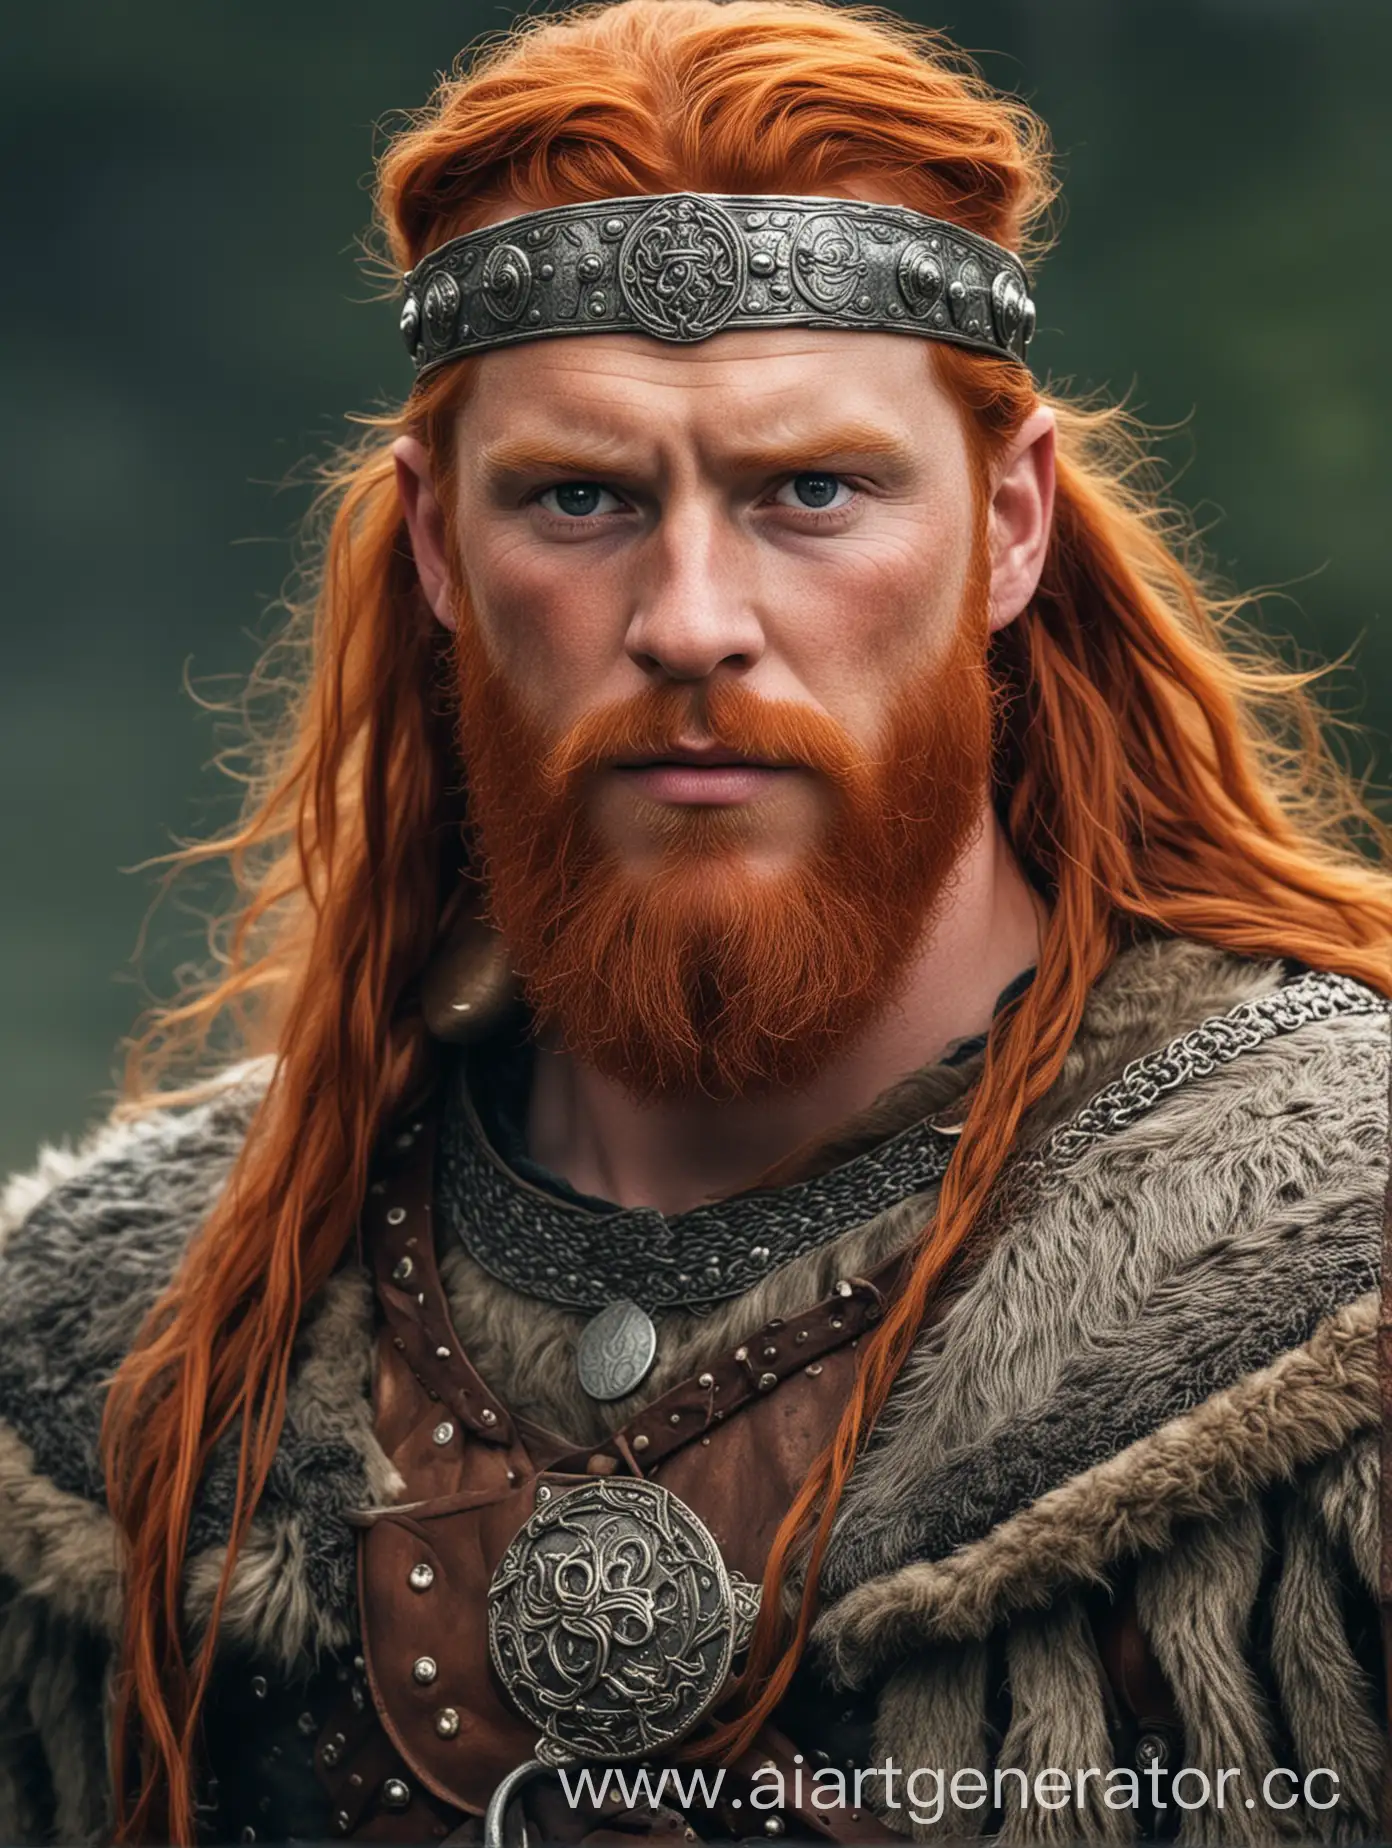 Конунг, рыжий могучий викинг, в богатой одежде.